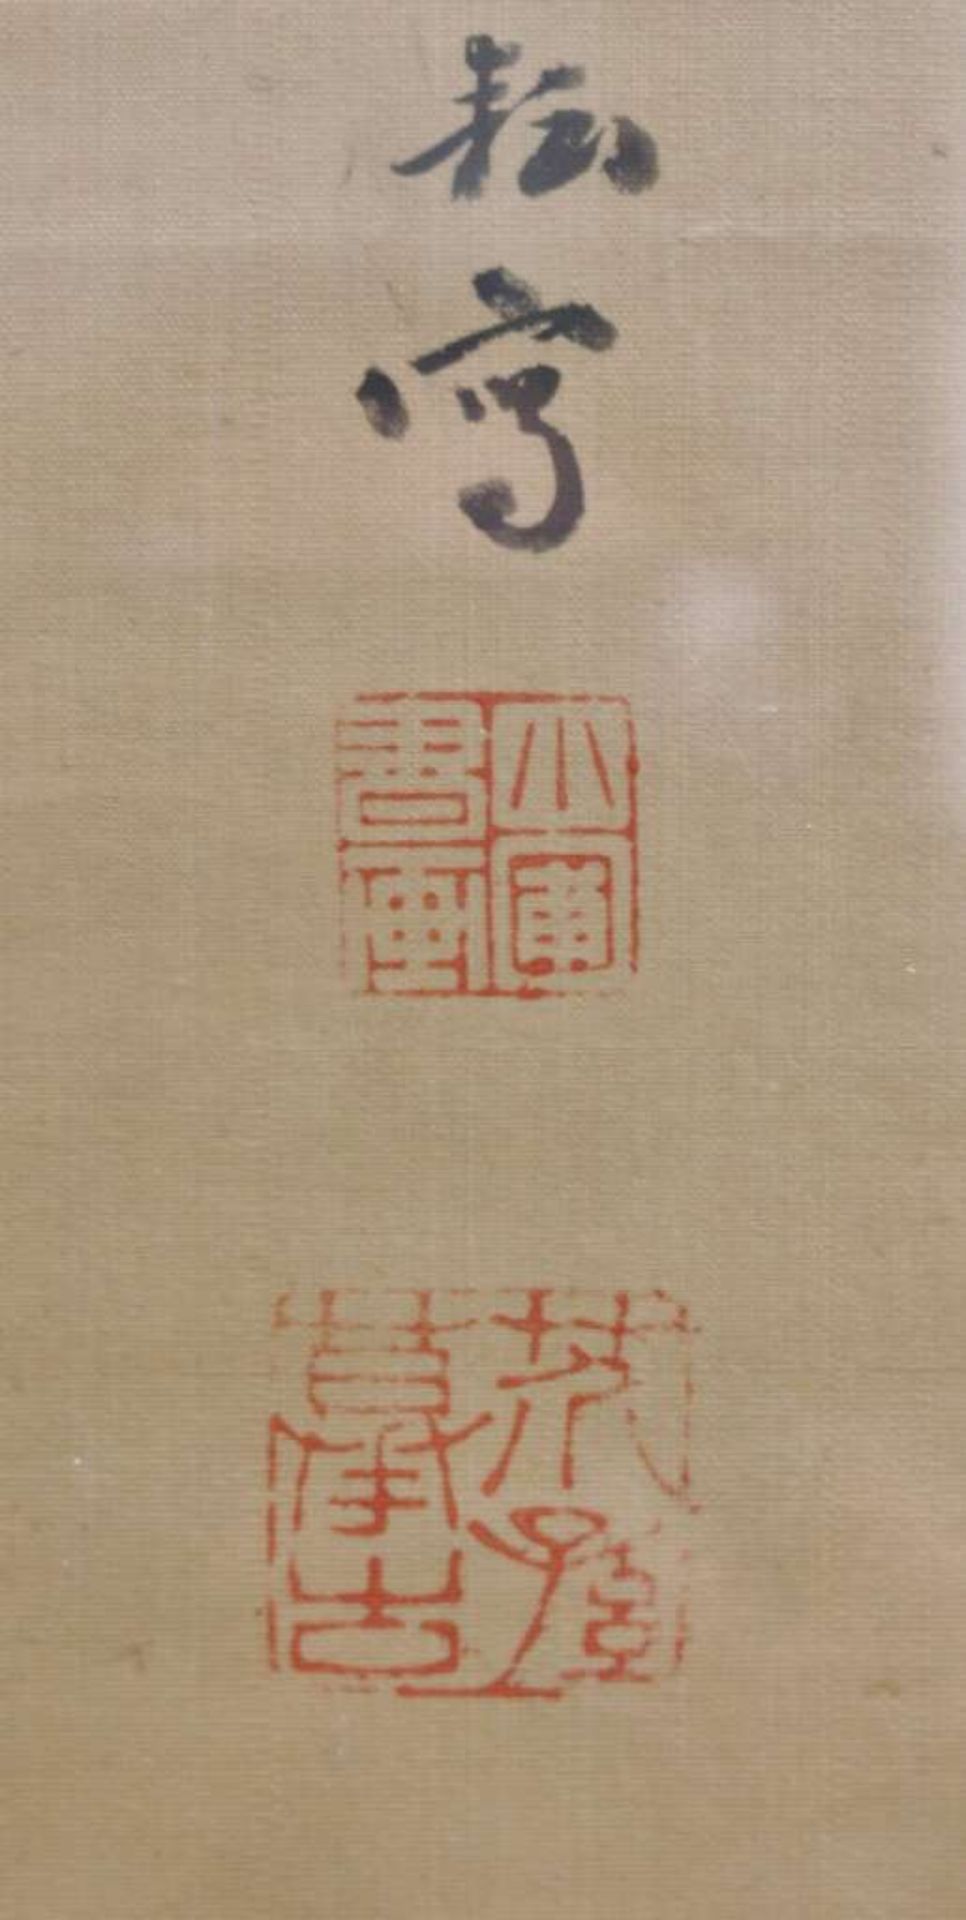 Kakemono, Tuschezeichnung, wohl Edo Zeit, in der Art des Tachihara KYOSHO (1786-1840), dargestellt - Bild 3 aus 5